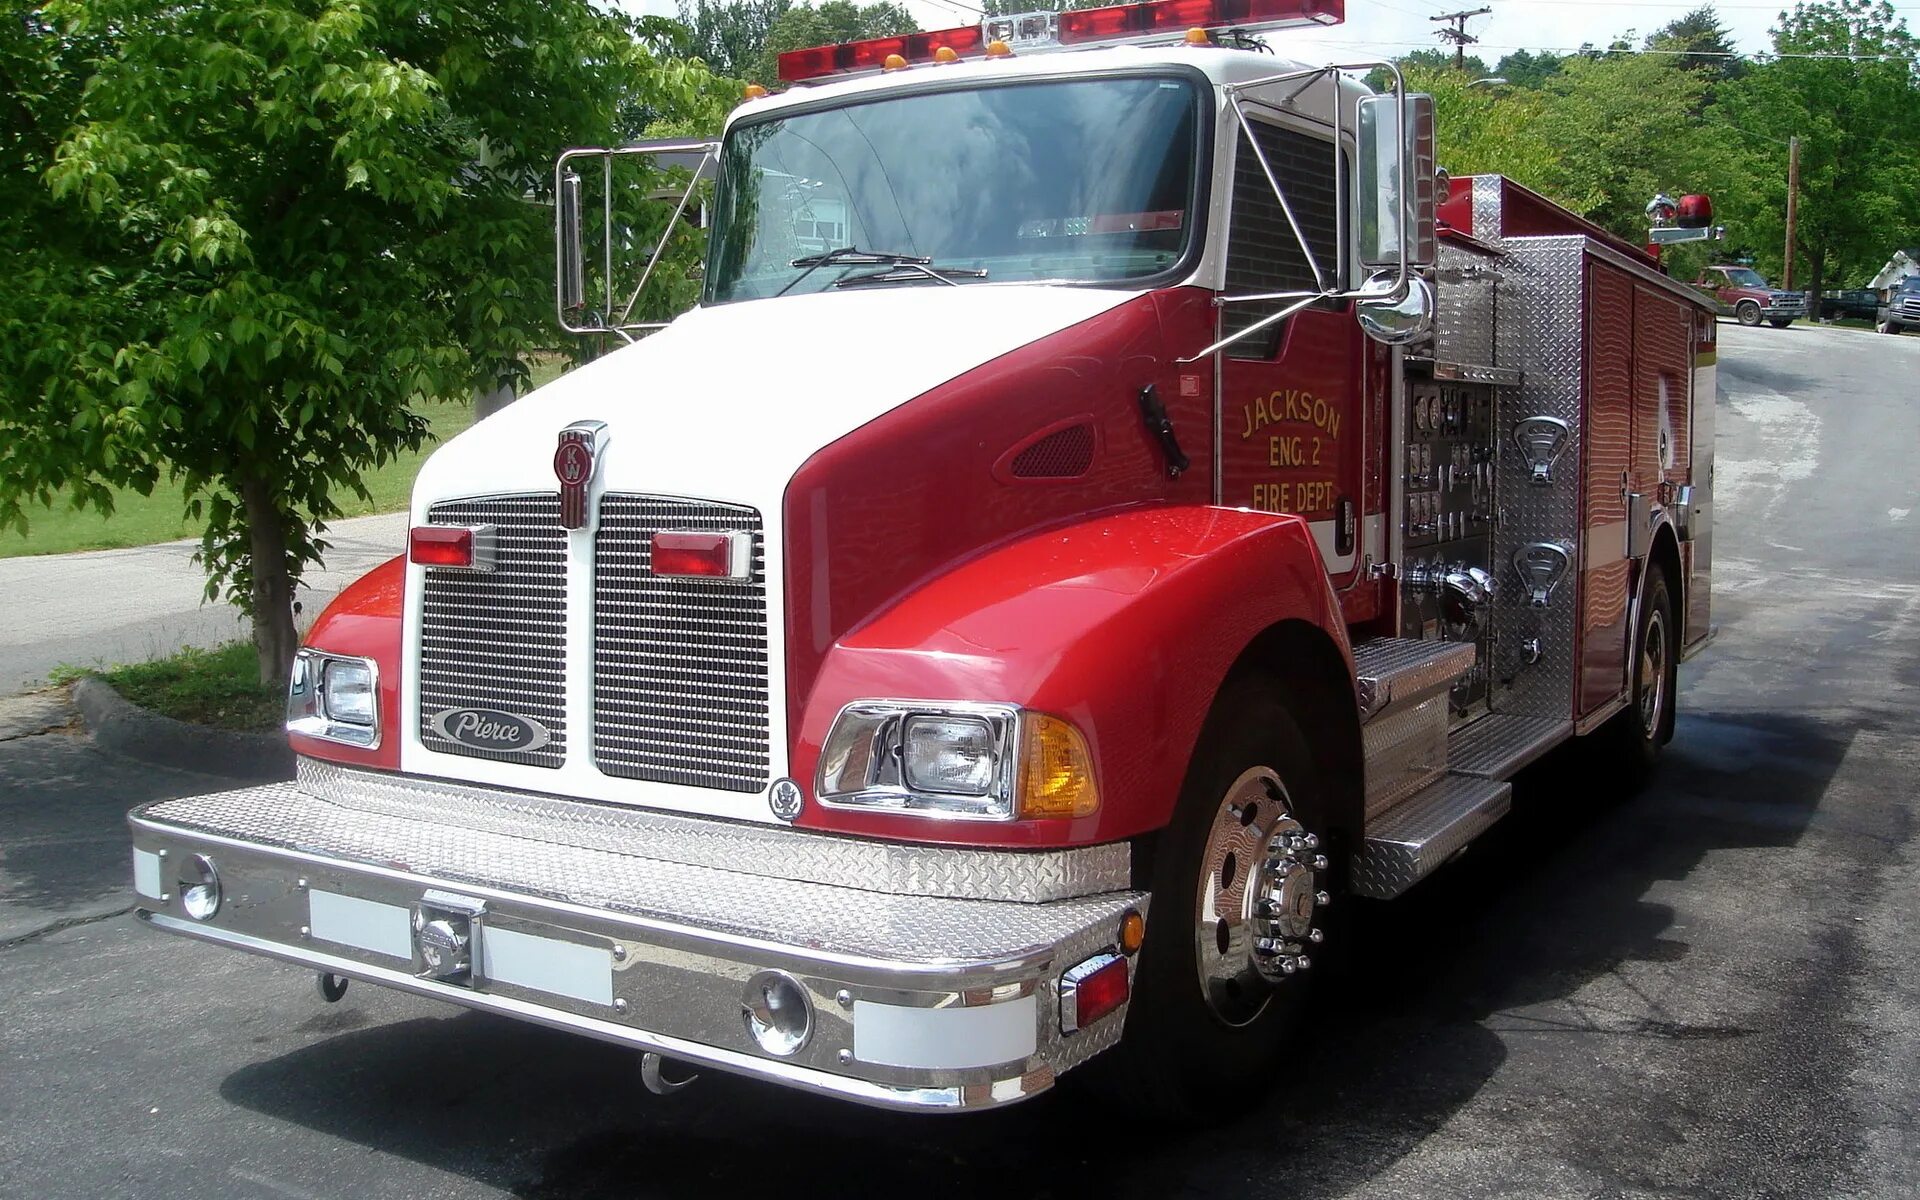 Грузовики 2000. Пожарная машина Кенворт. Автомобиль Кенворт грузовой. Пожарные автомобили США Кенворт. C15 #Kenworth.